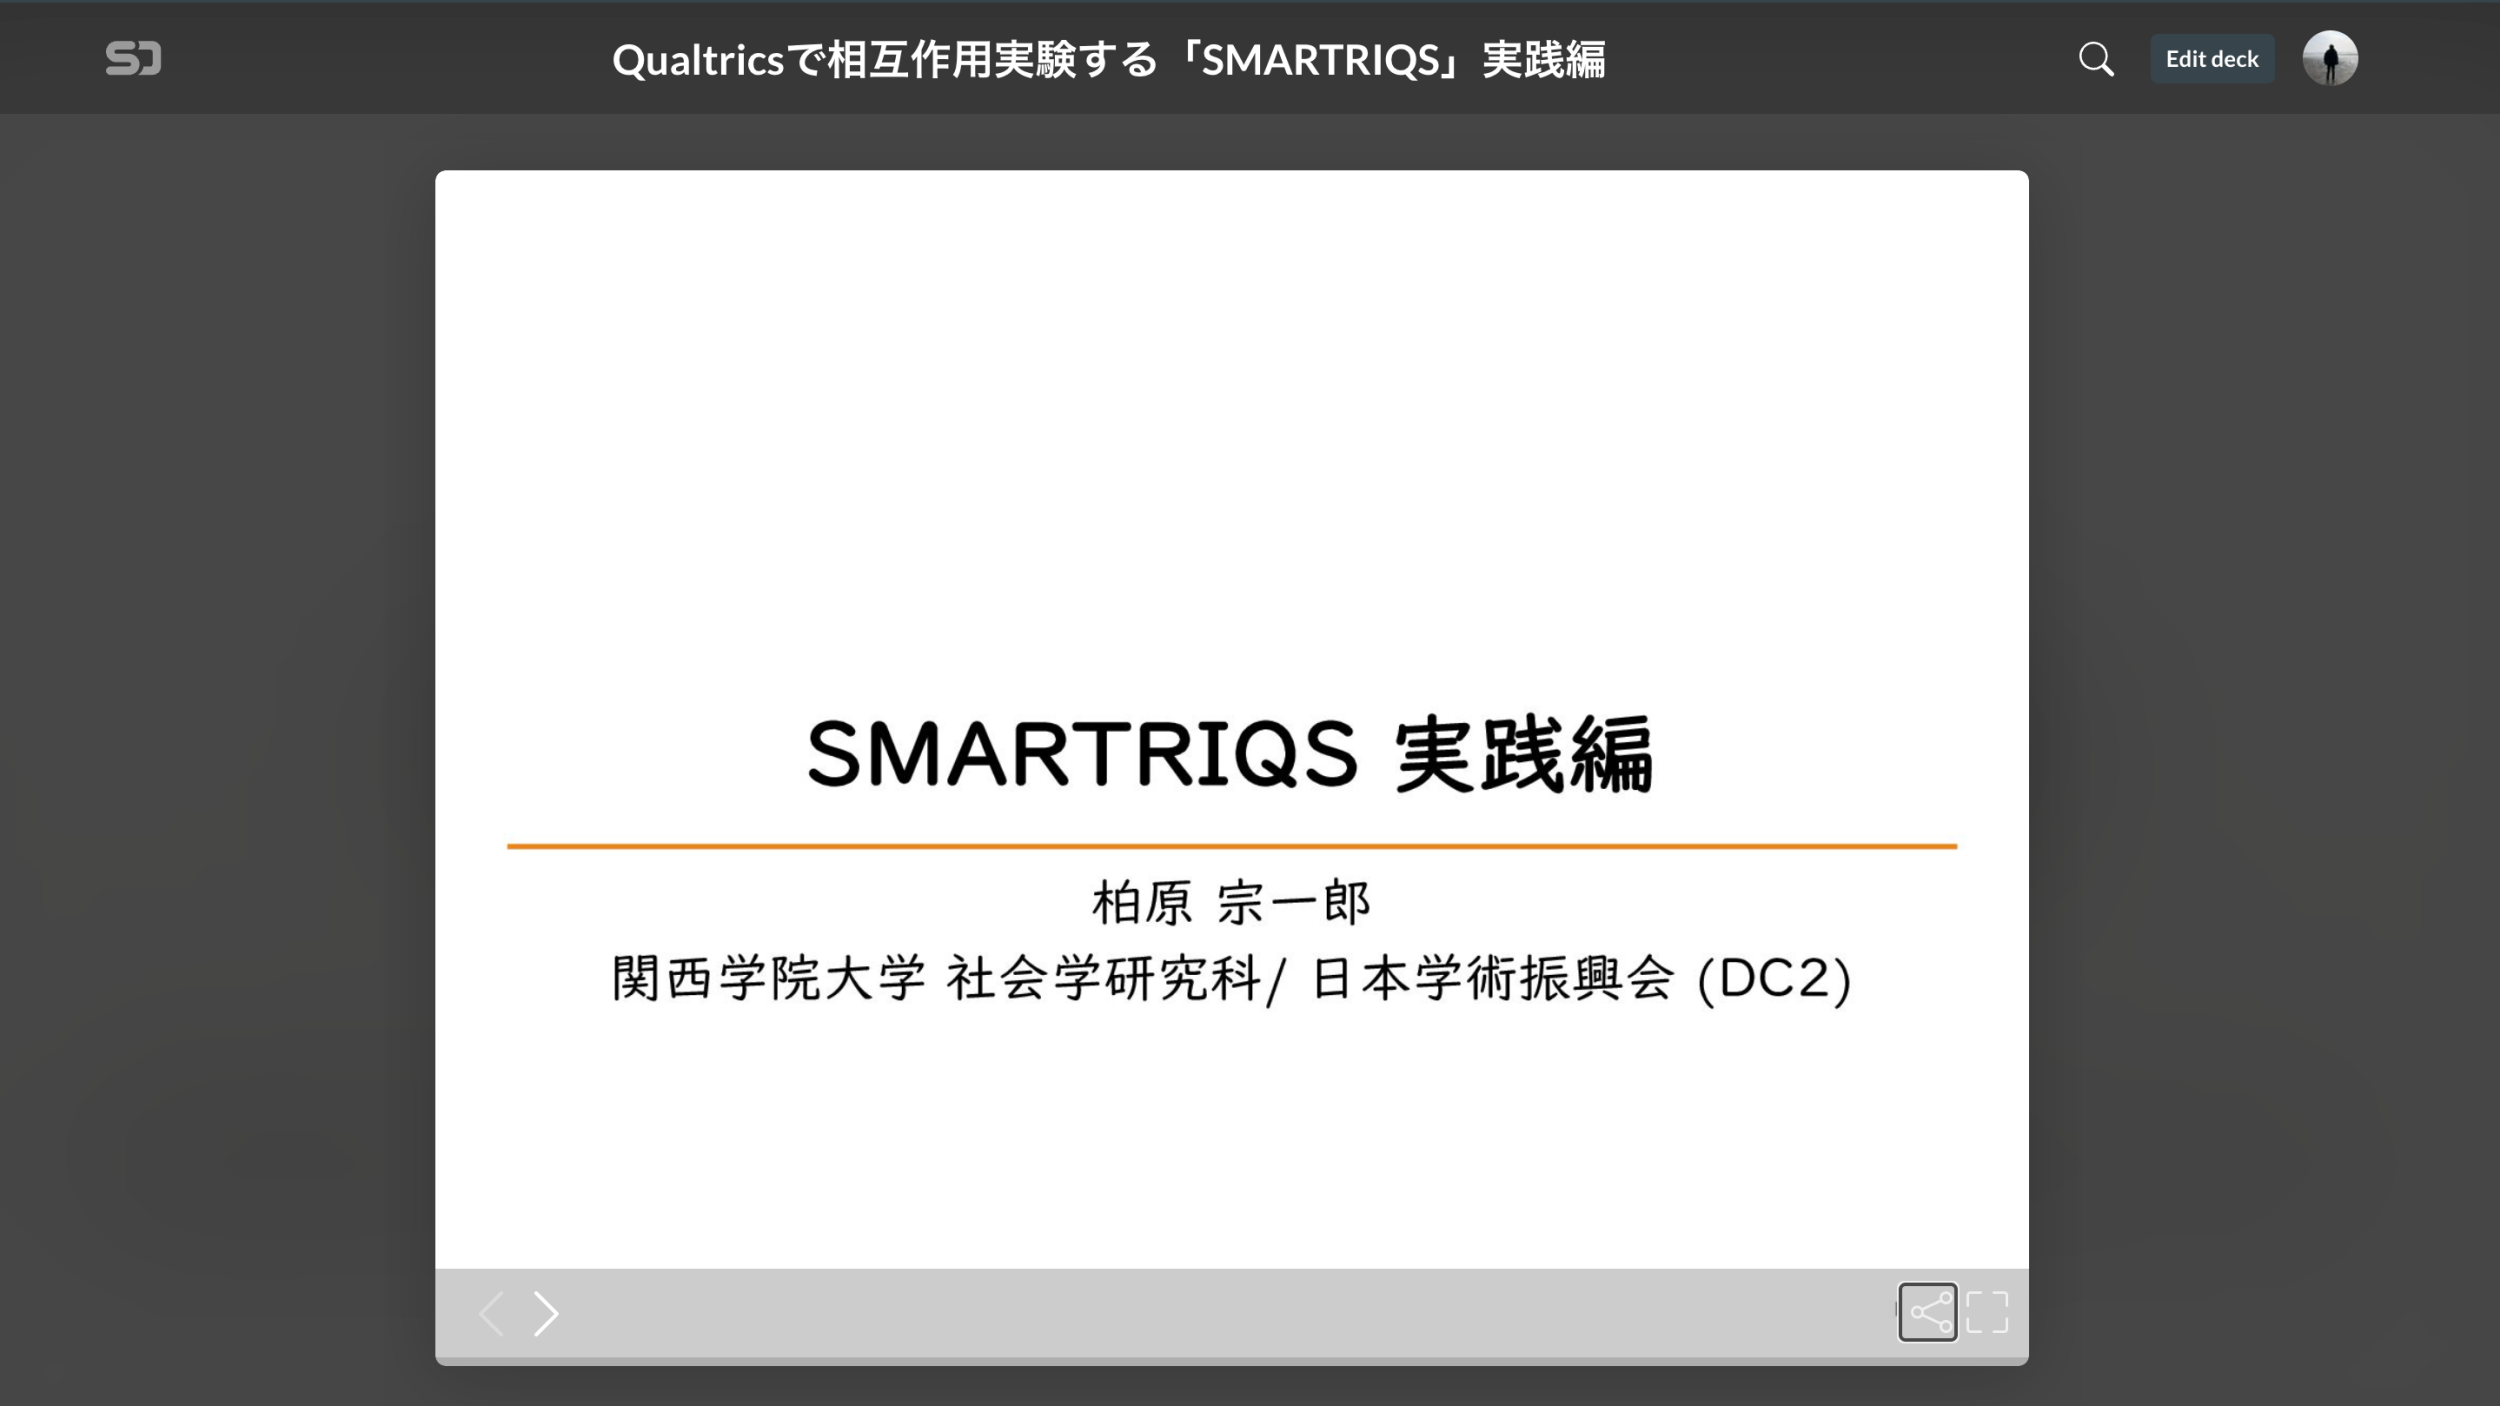 Qualtricsで相互作用実験する「SMARTRIQS」のチュートリアル資料を公開しました